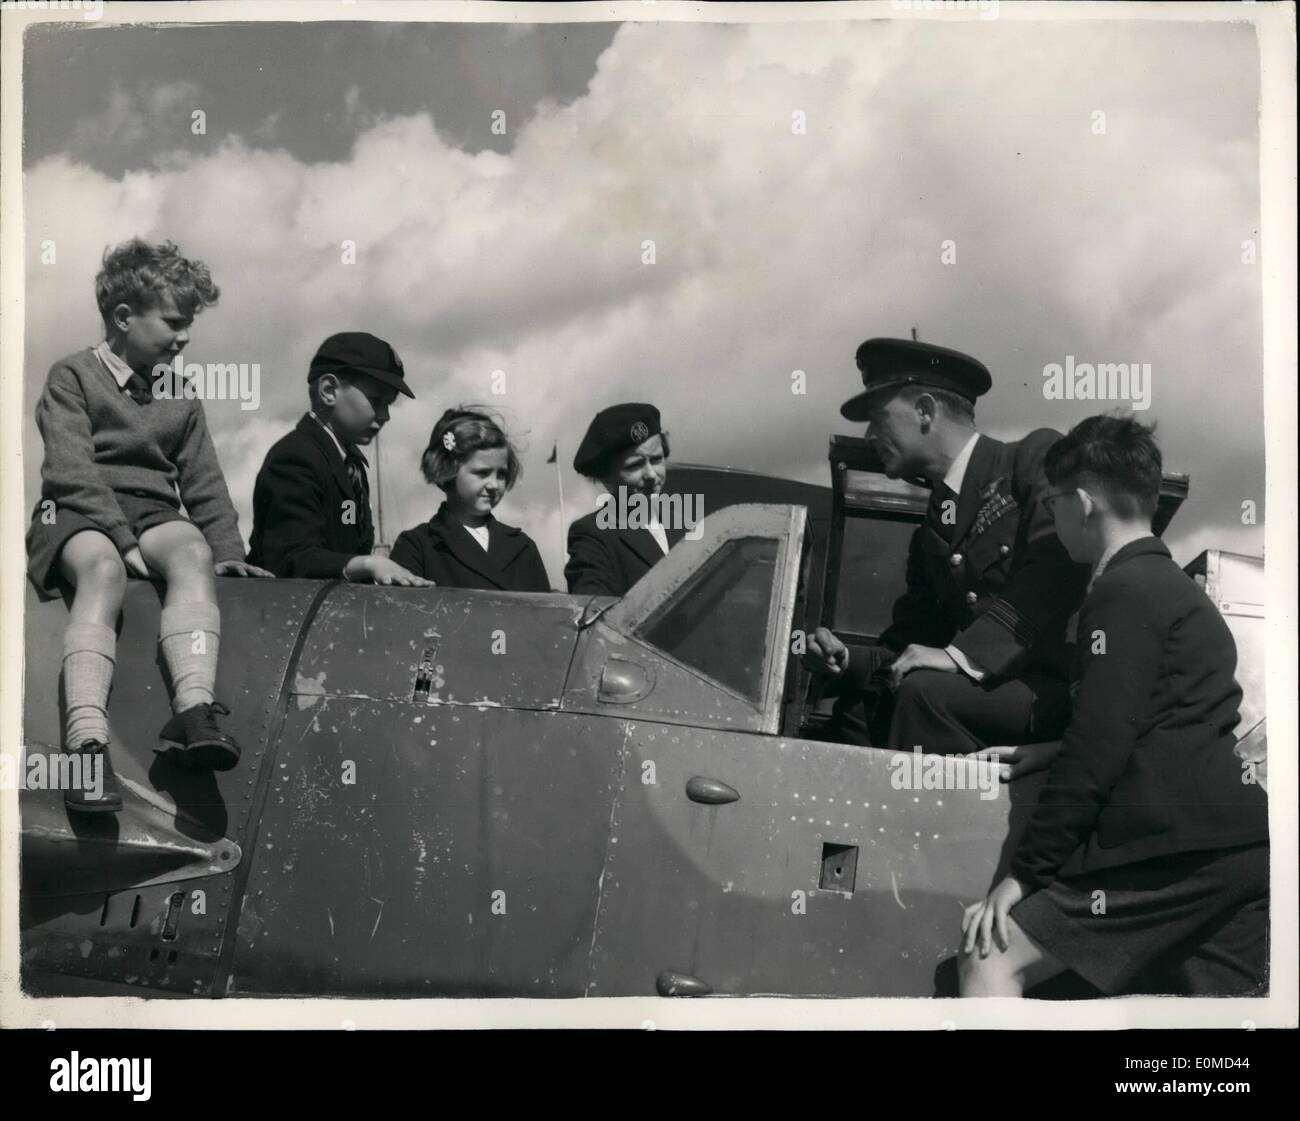 Sett. 09, 1954 - ''Battaglia della Gran Bretagna'' aeromobile display. M.E. 109 Kingaby sulla sfilata delle Guardie a Cavallo: un display di inglesi e tedeschi in aereo che ha preso parte alla battaglia di Gran Bretagna è tenuto sulla sfilata delle Guardie a Cavallo in occasione del primo anniversario della battaglia. La foto mostra una battaglia di Bretagna "ACE" Sqd. Leader Don Kingaby D.S.O., A.F.C., D.F.M. e due barre che proviene da Beckenham, Kent seduto nella cabina di pilotaggio di un Mo. 109.  a chiacchierare con i ragazzi su la sfilata delle Guardie a Cavallo di questa mattina. Sqd. Leader Kingaby abbattuto 22 aeromobili (18 M.E.) durante la guerra e poi è stata una F/Sgt Foto Stock